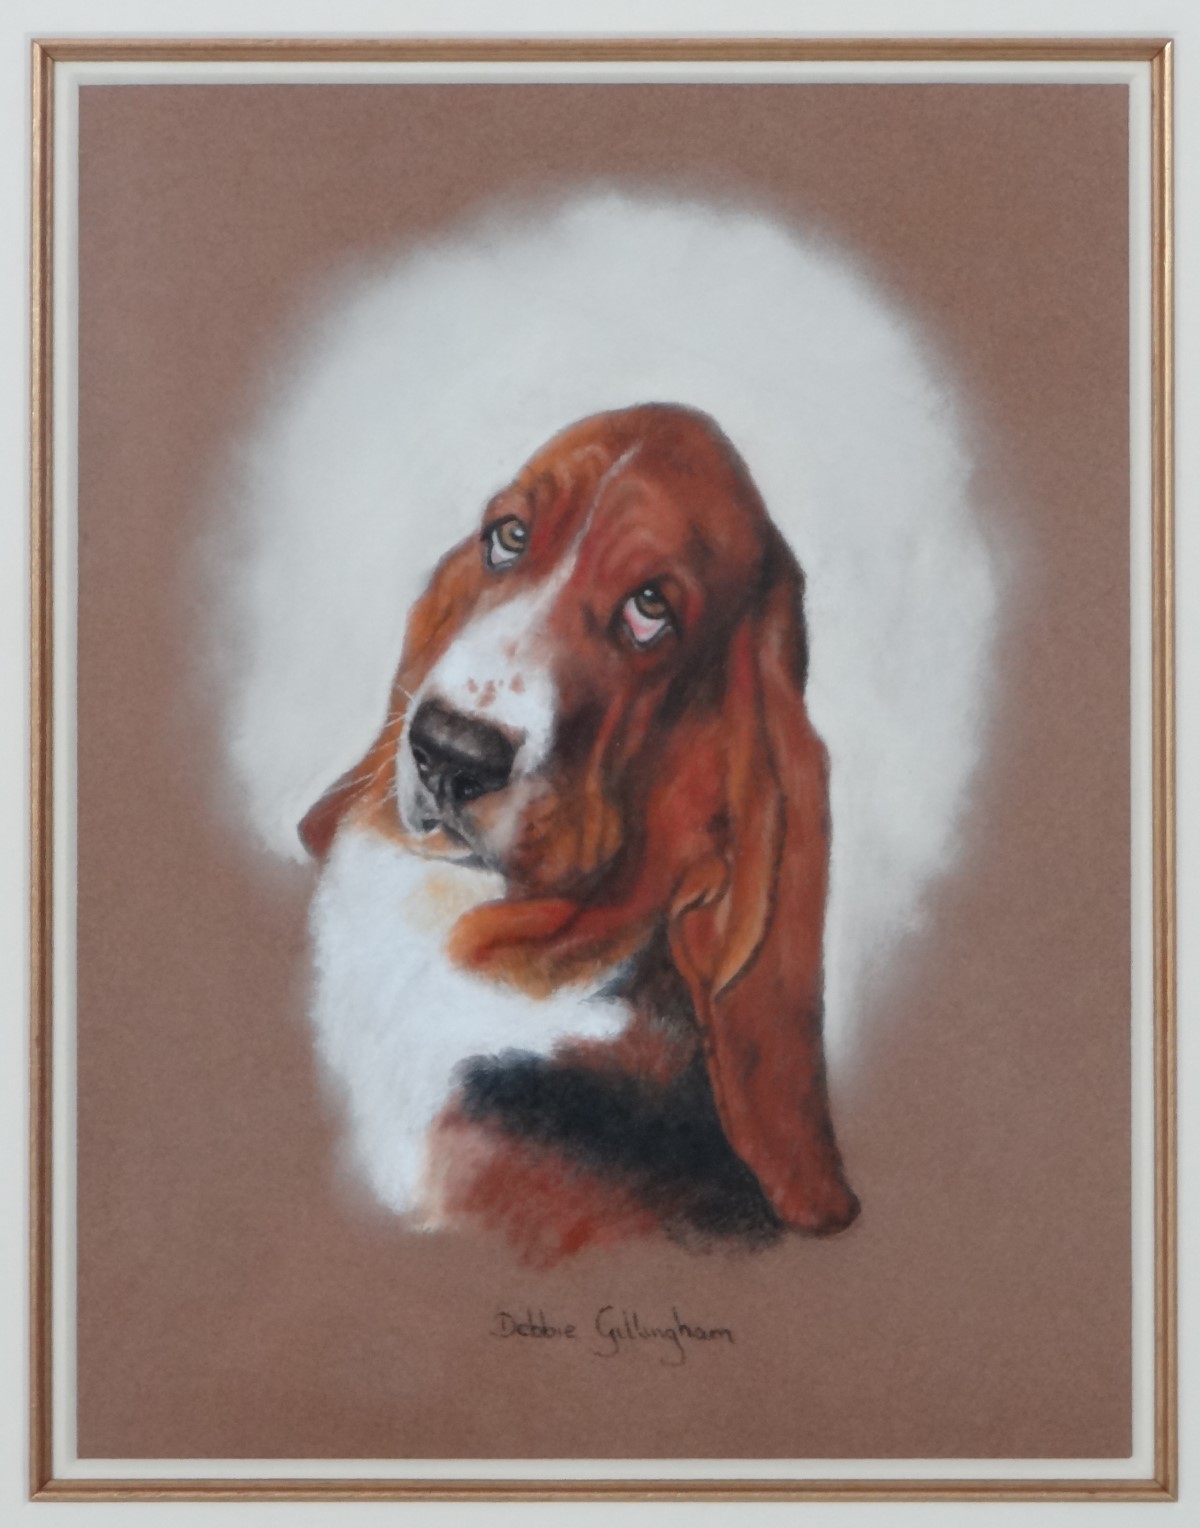 Debbie Gillingham (1965), Canine School, Pastel on paper, Portrait of a Basset Hound dog, - Image 3 of 4